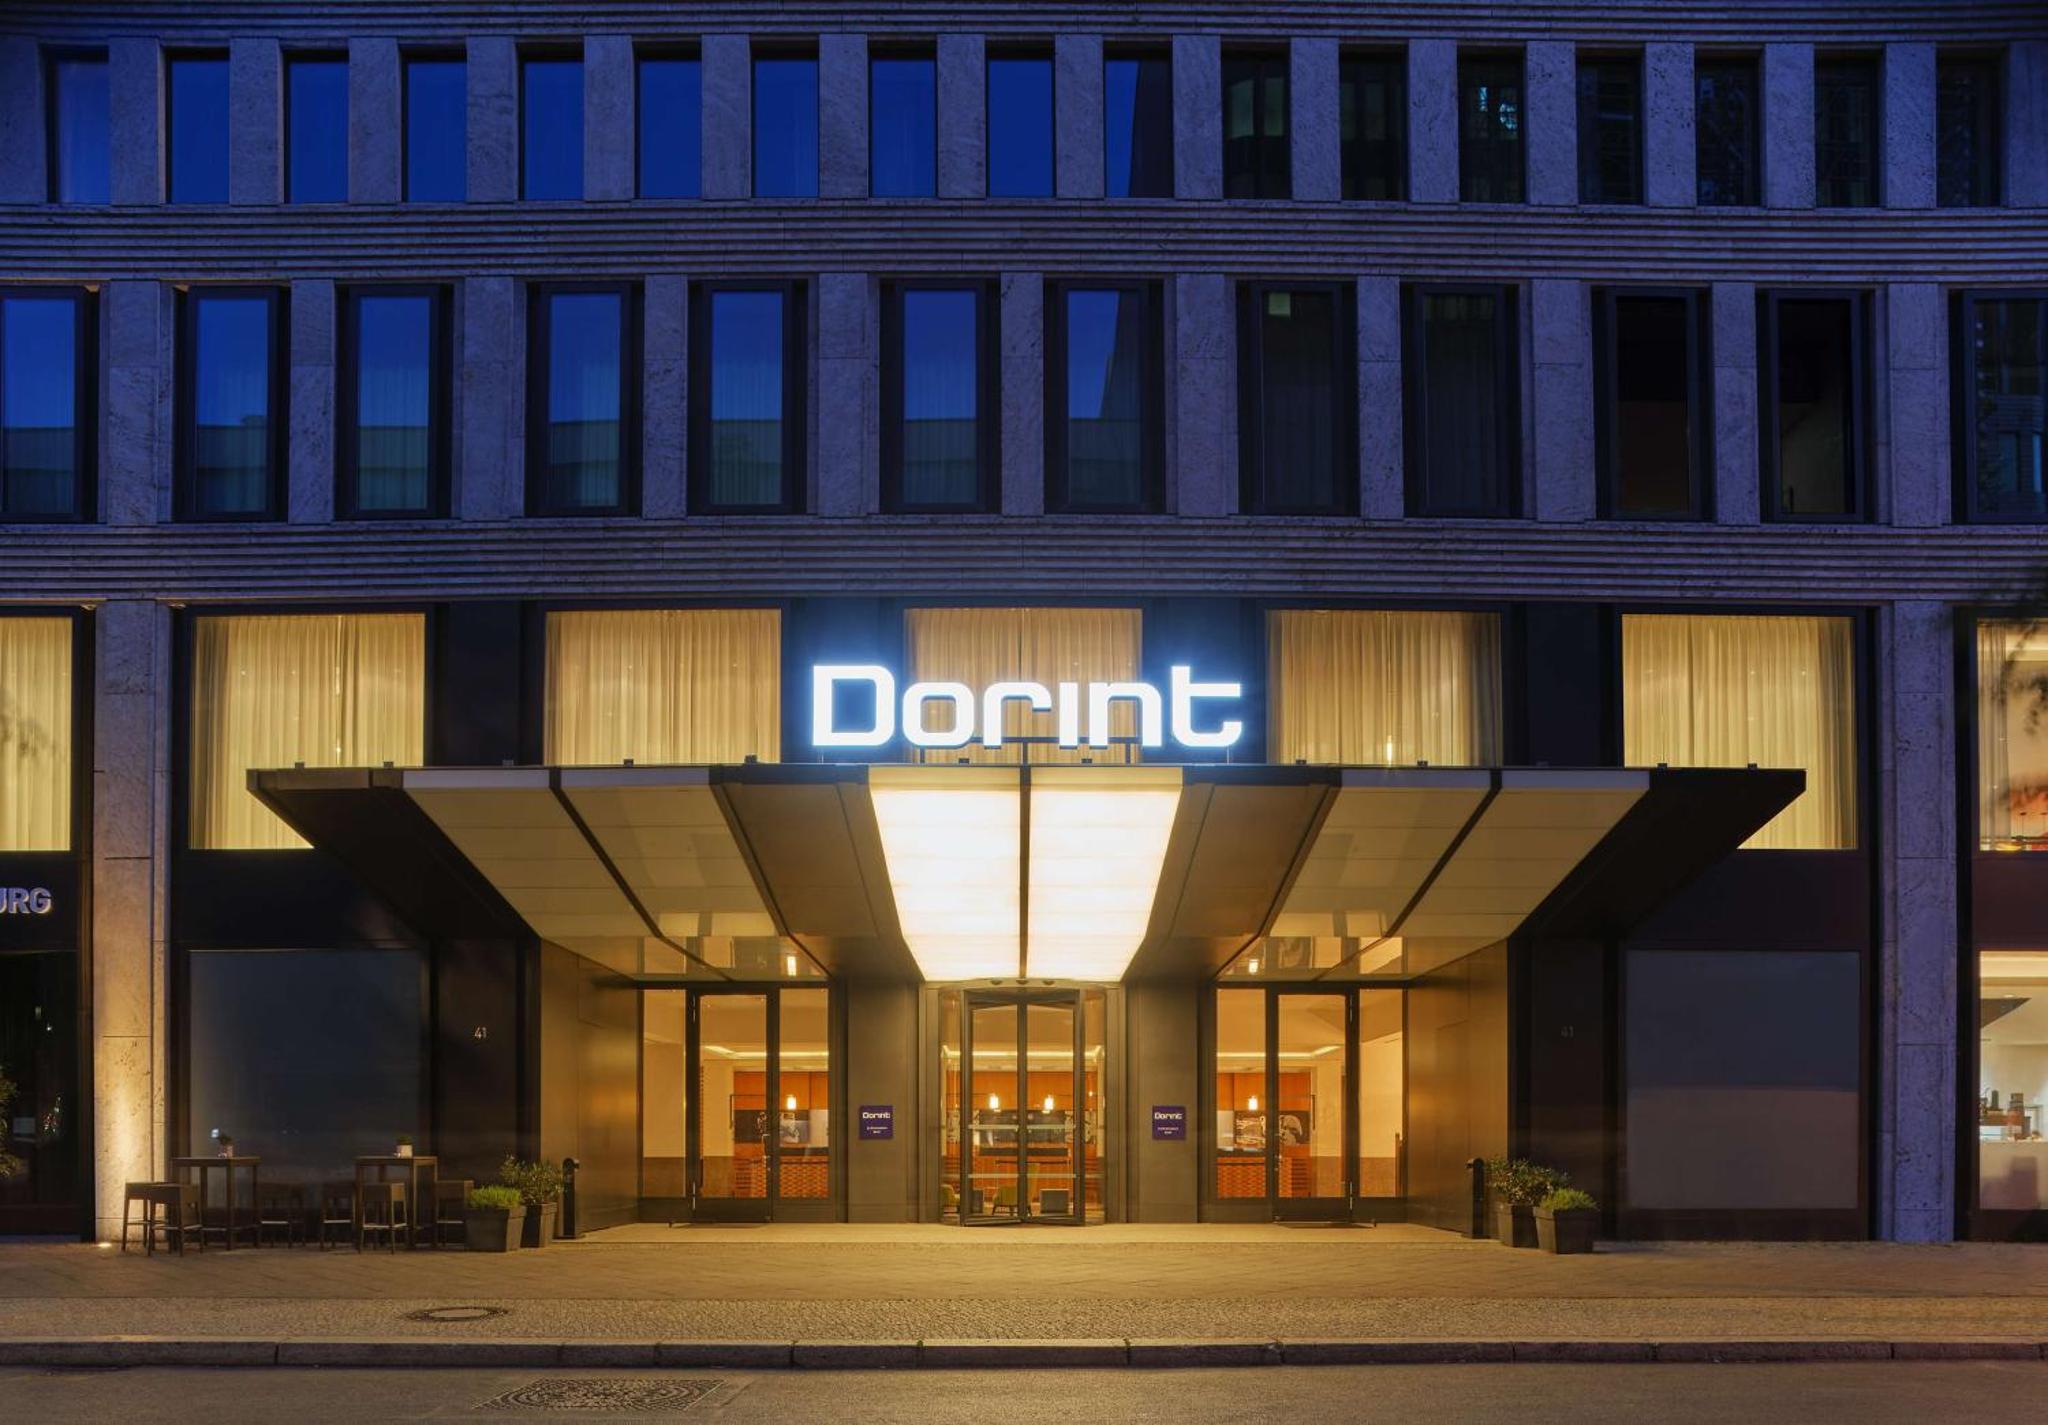 Hotel Dorint Kurfürstendamm Berlin